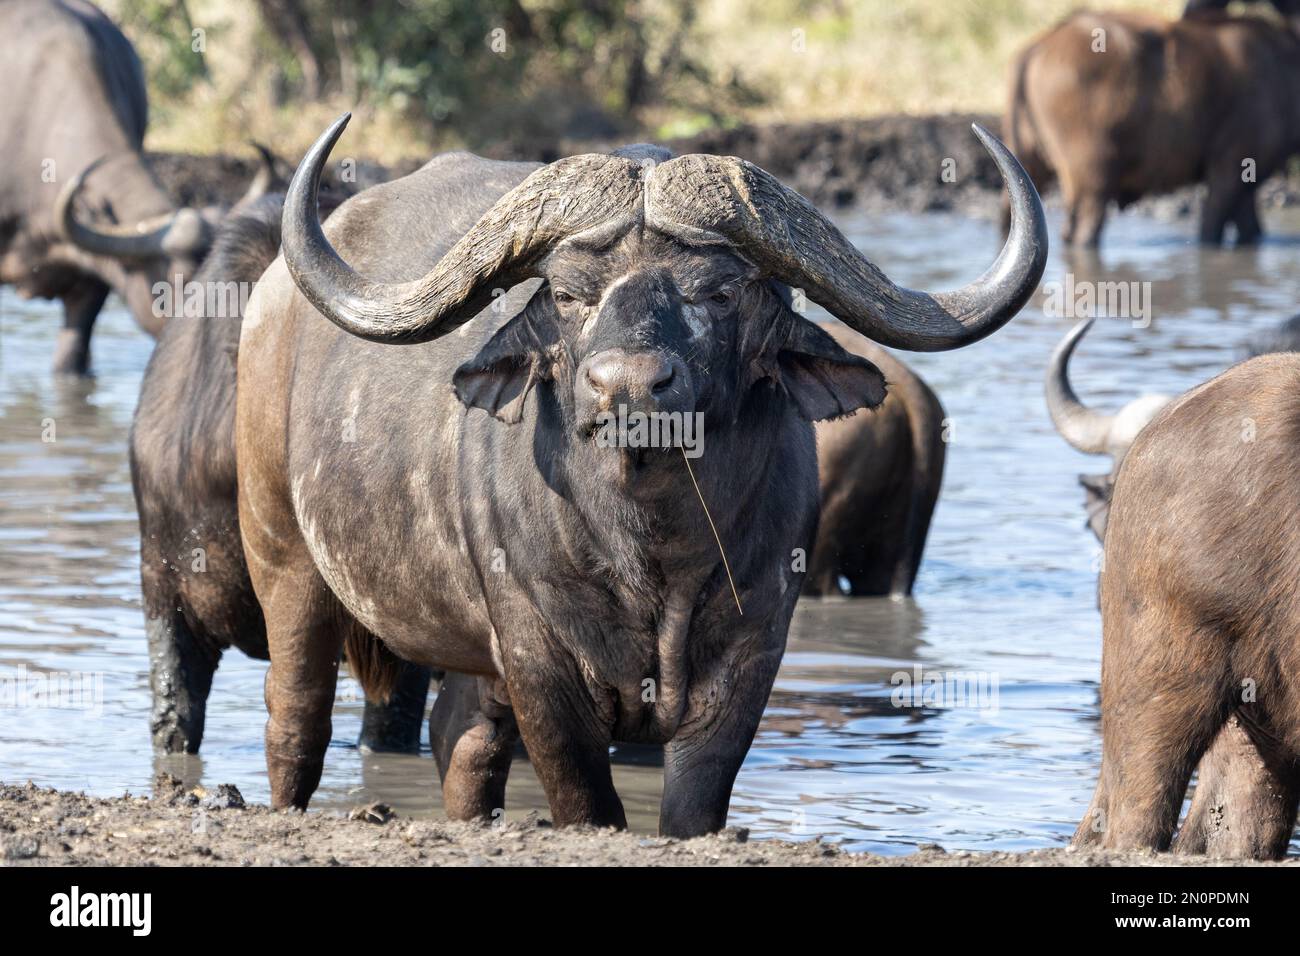 Un búfalo, Syncerus caffer, se encuentra en una presa, mirada directa Foto de stock